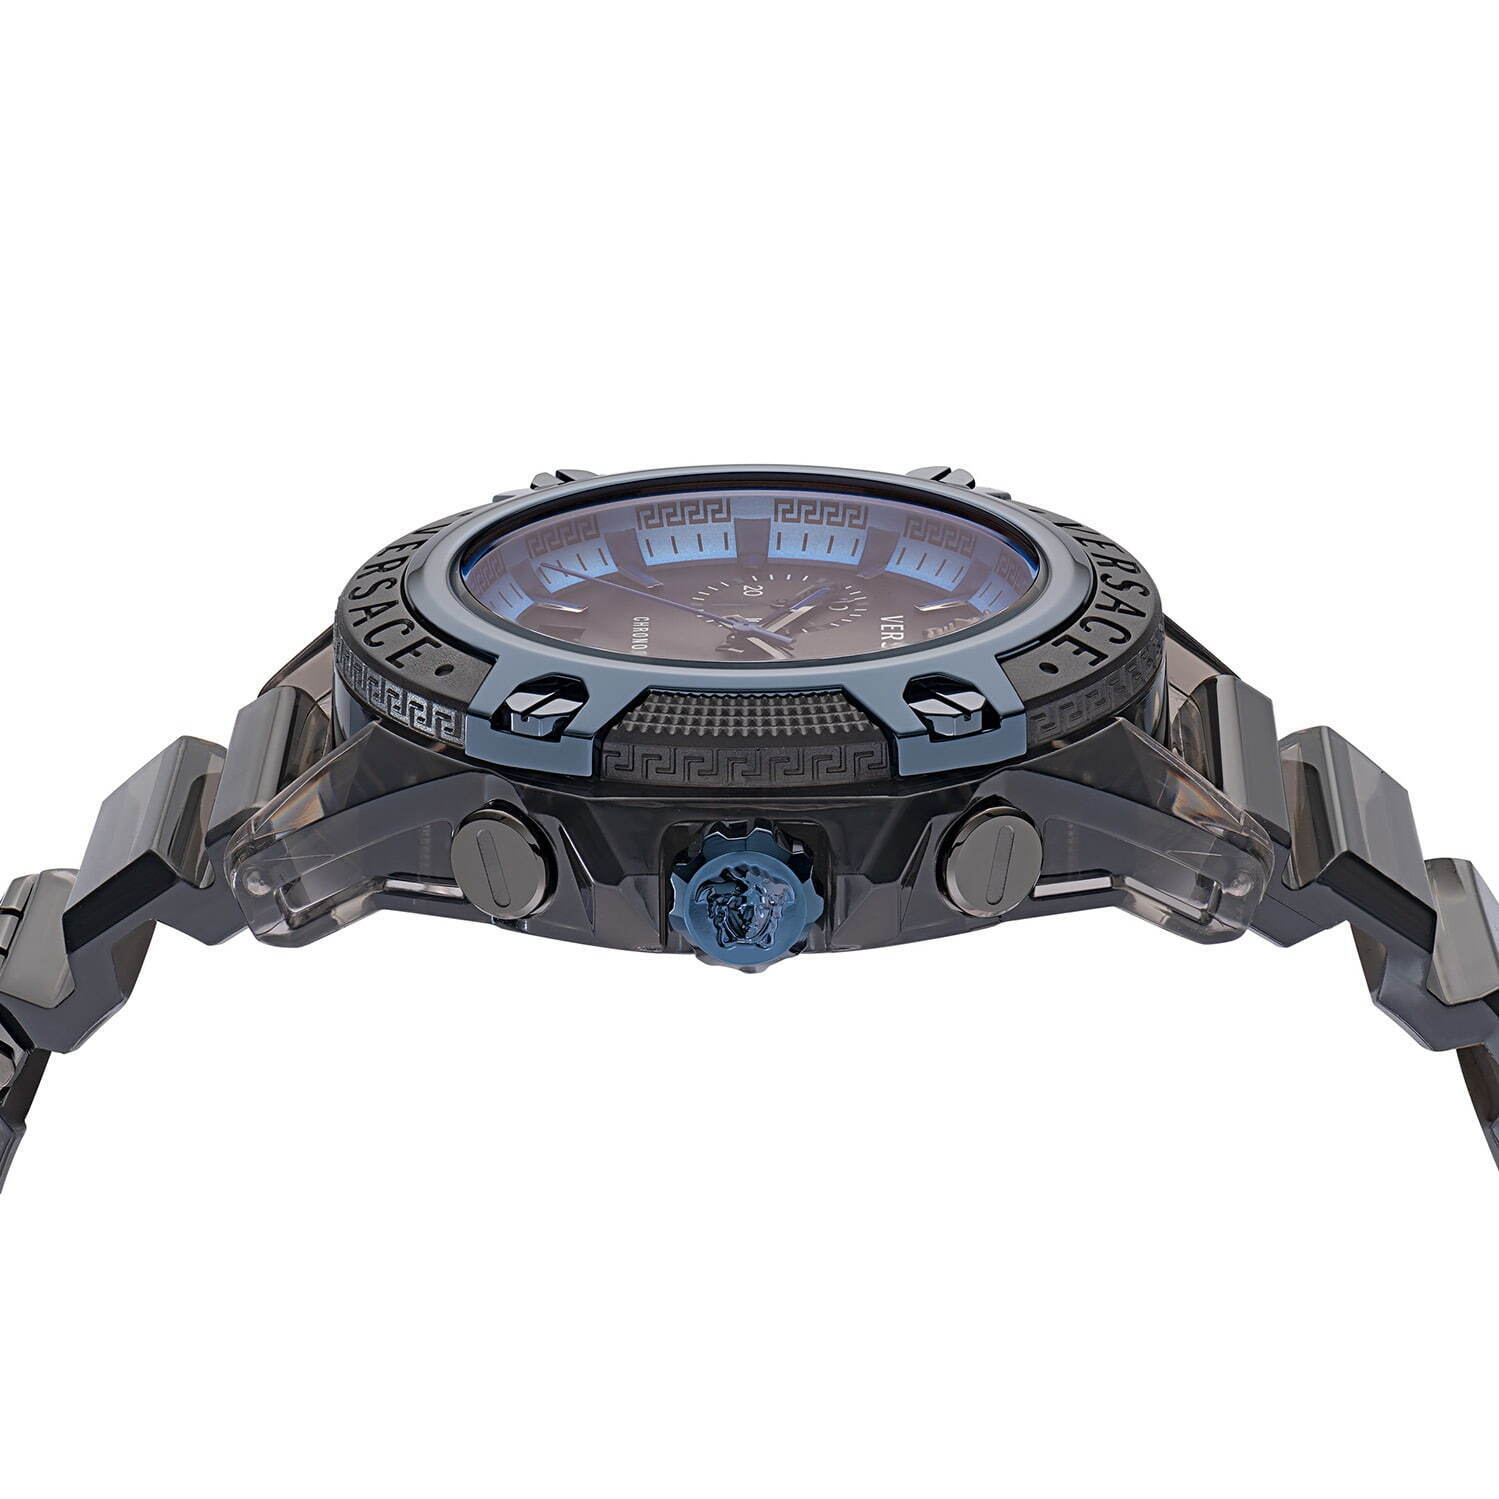 ヴェルサーチェの腕時計「アイコン アクティブ」新色、カモフラージュ 